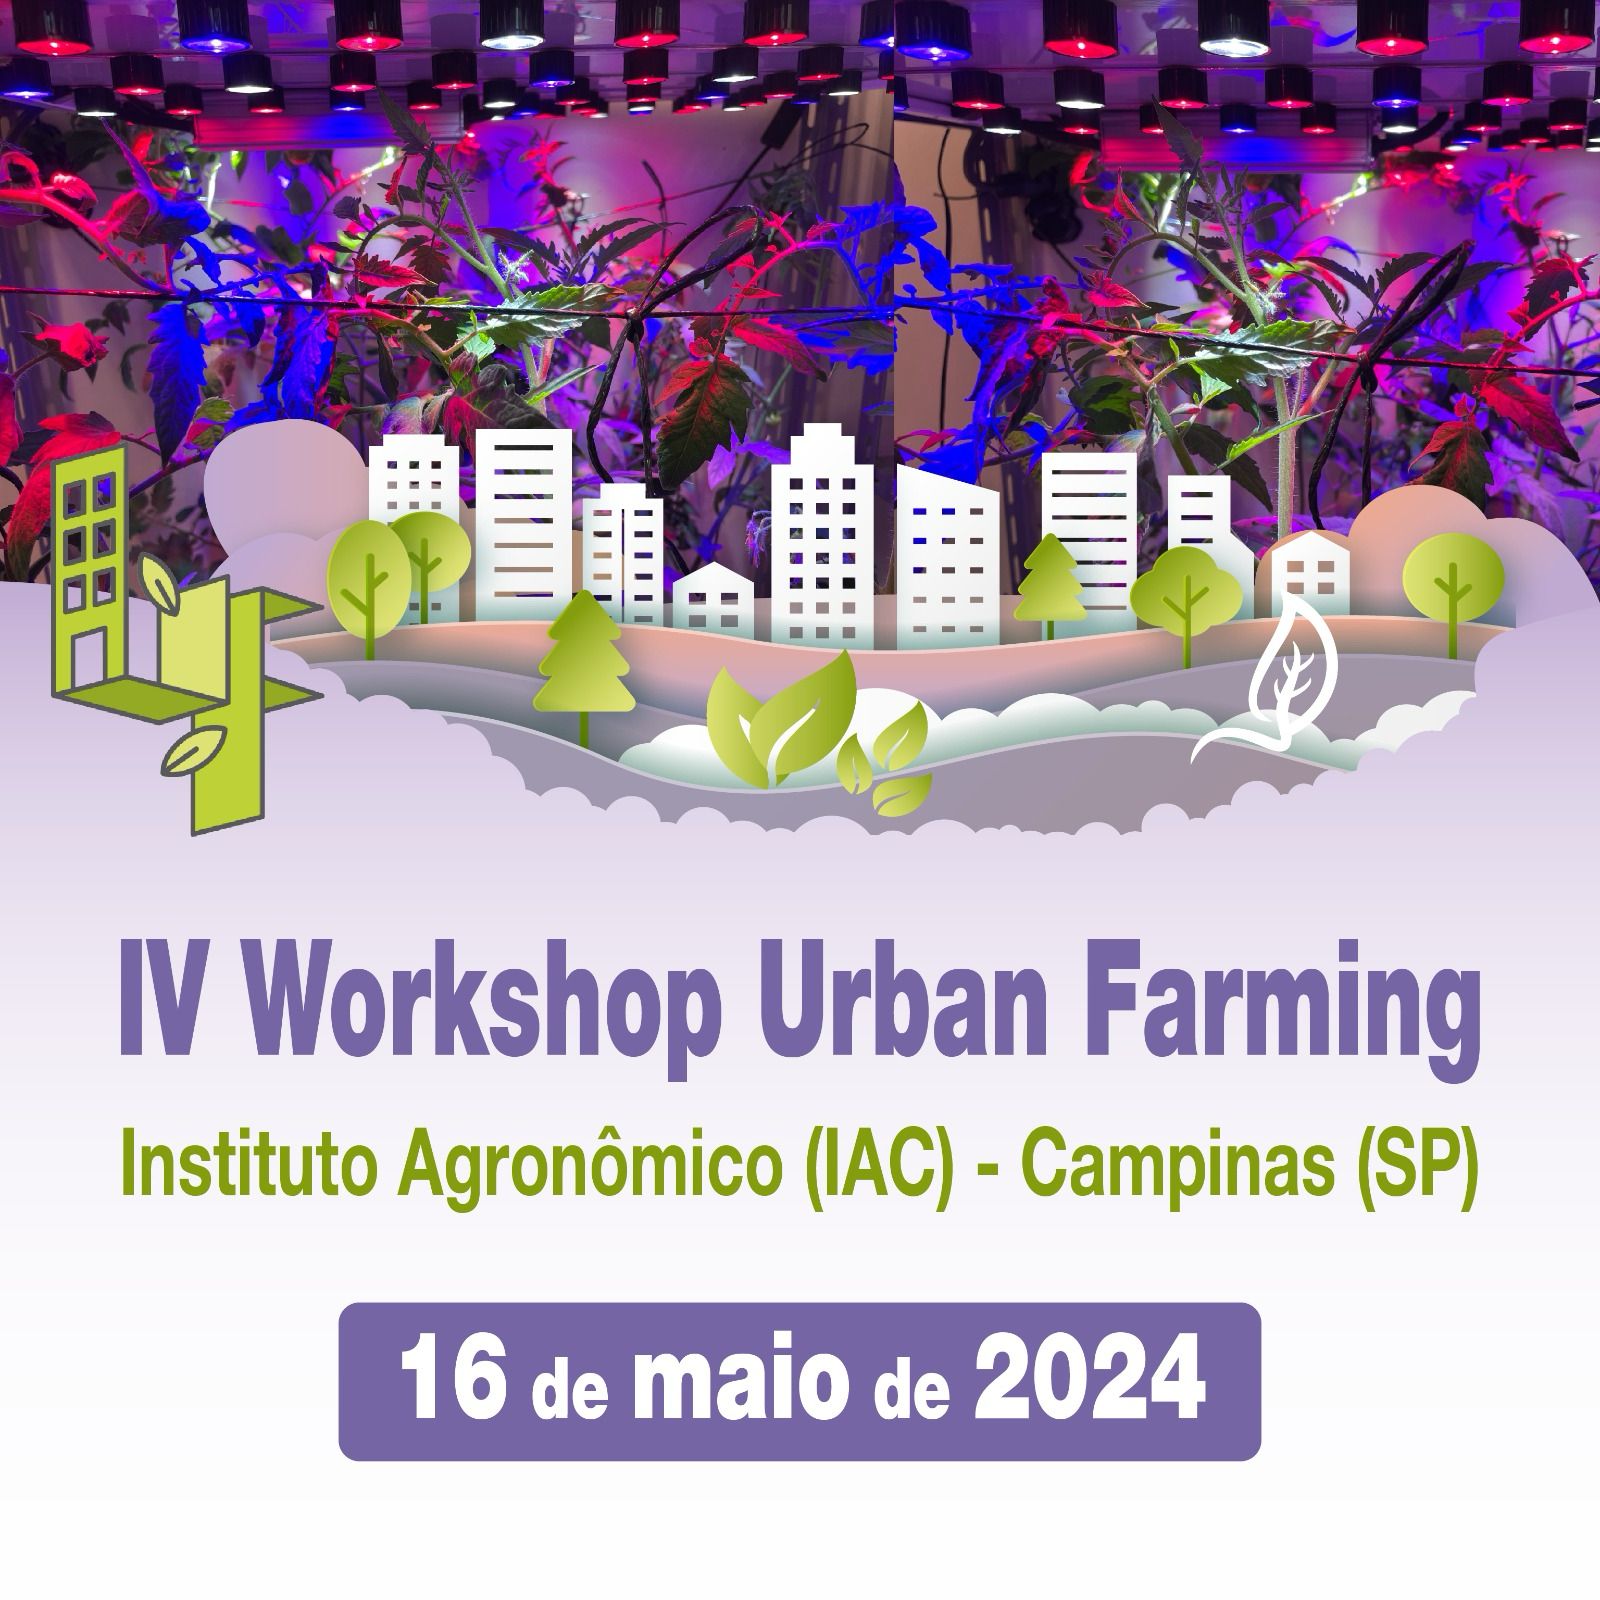 Participe do IV Workshop Urban Farming em Campinas – SP